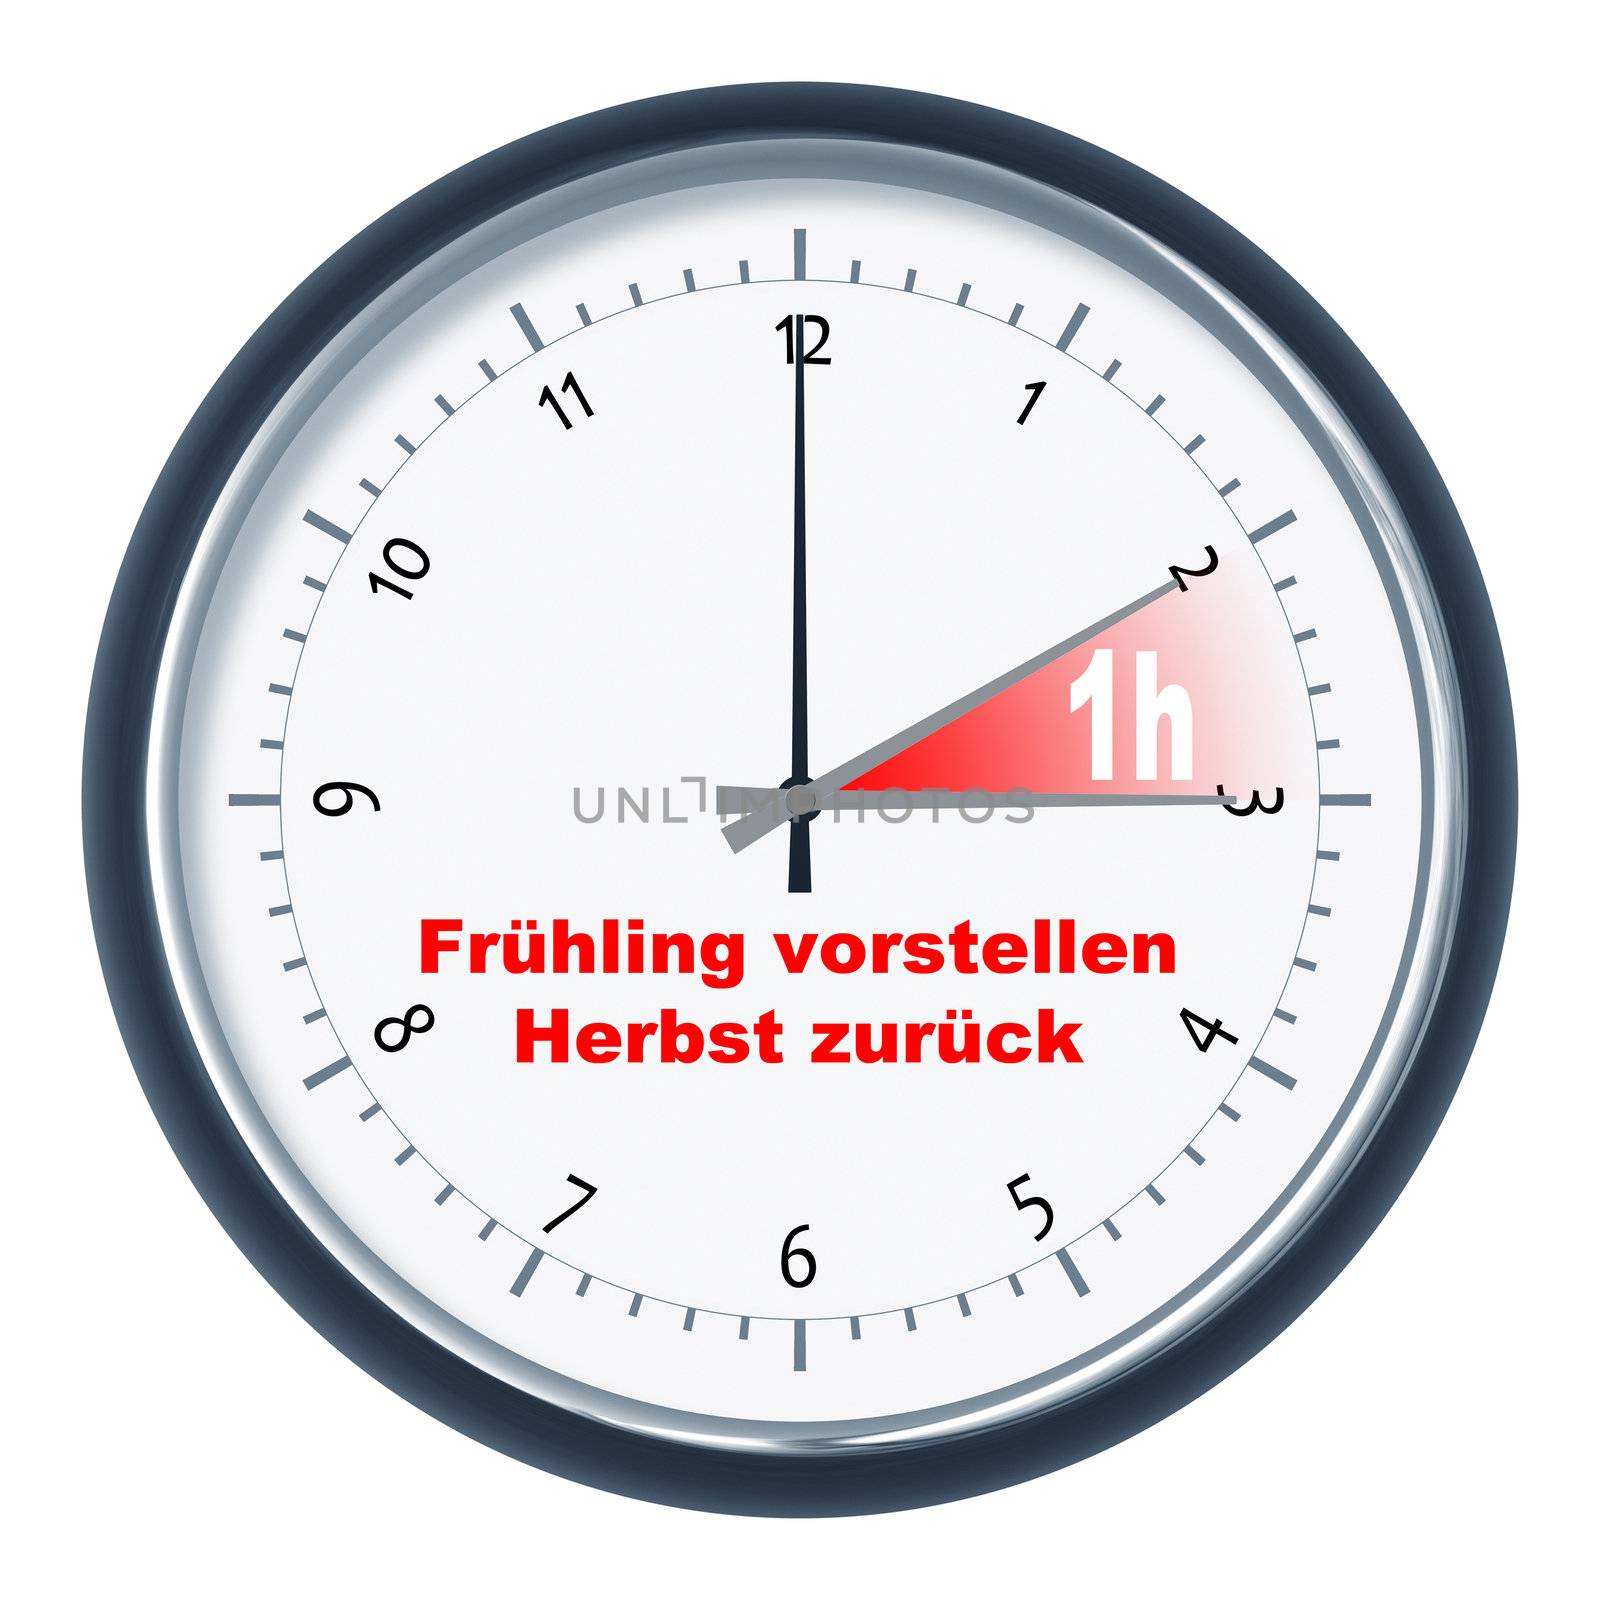 An image of a clock "Frühling vorstellen - Herbst zurück"